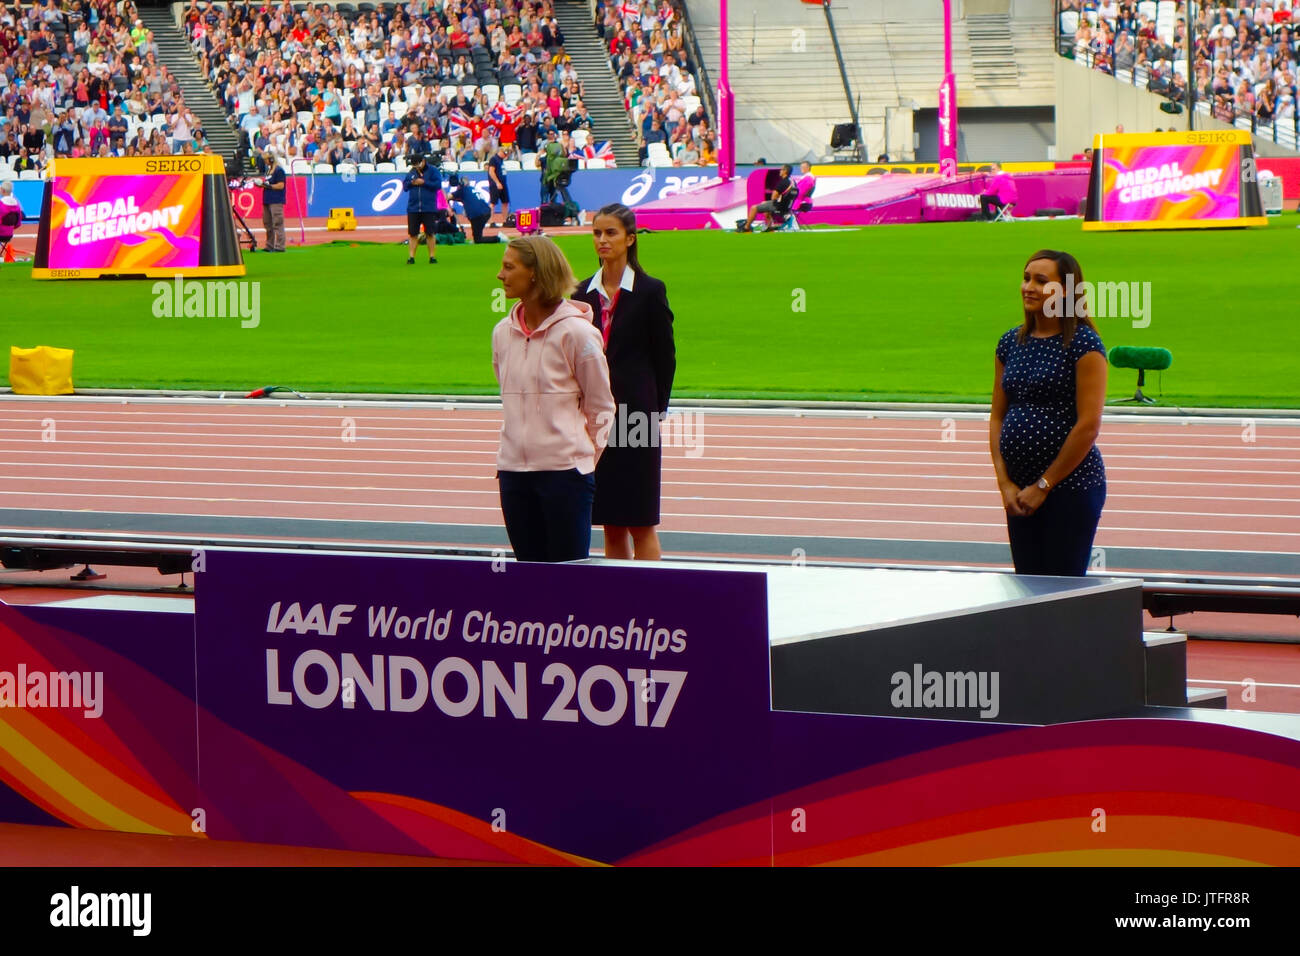 6 août 2017, Londres, stade de l'Est de Londres, Angleterre ; es Championnats du monde, Jennifer Oeser d'Allemagne et Jessica Ennis de Grande-Bretagne Banque D'Images